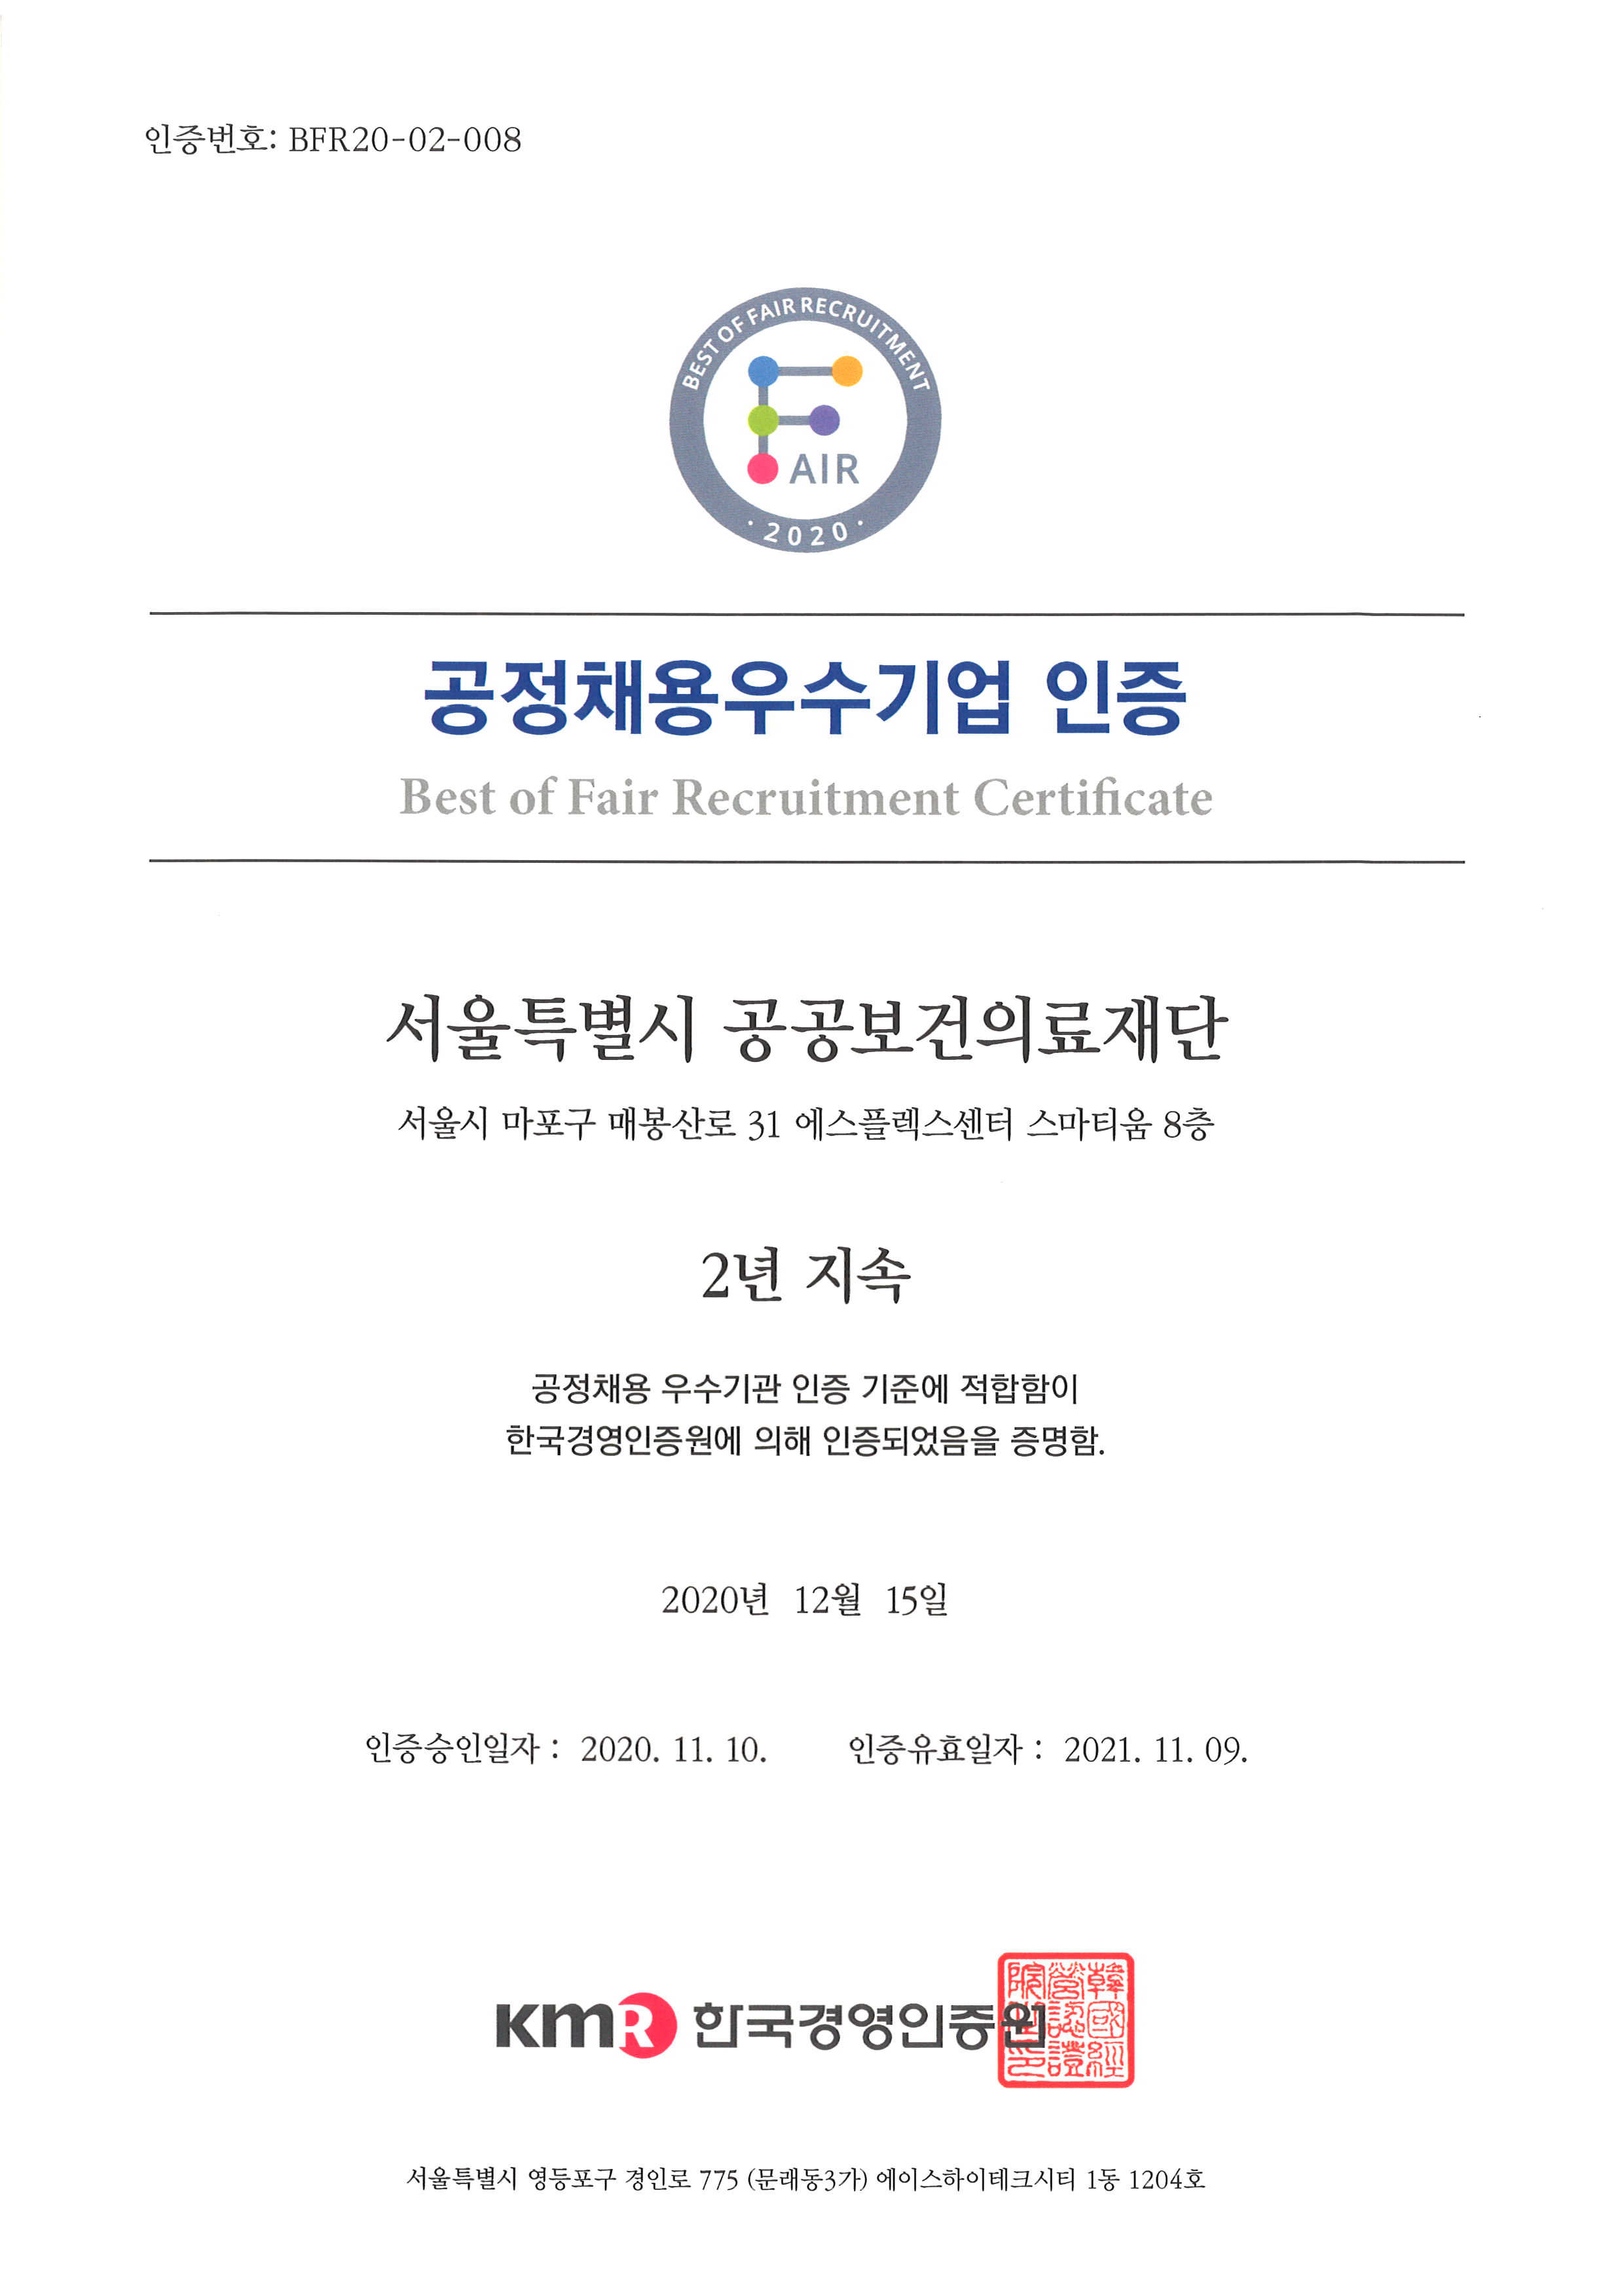 서울특별시 공공보건의료재단 2년 연속 공정채용 우수기관 선정(2022년 인증서)